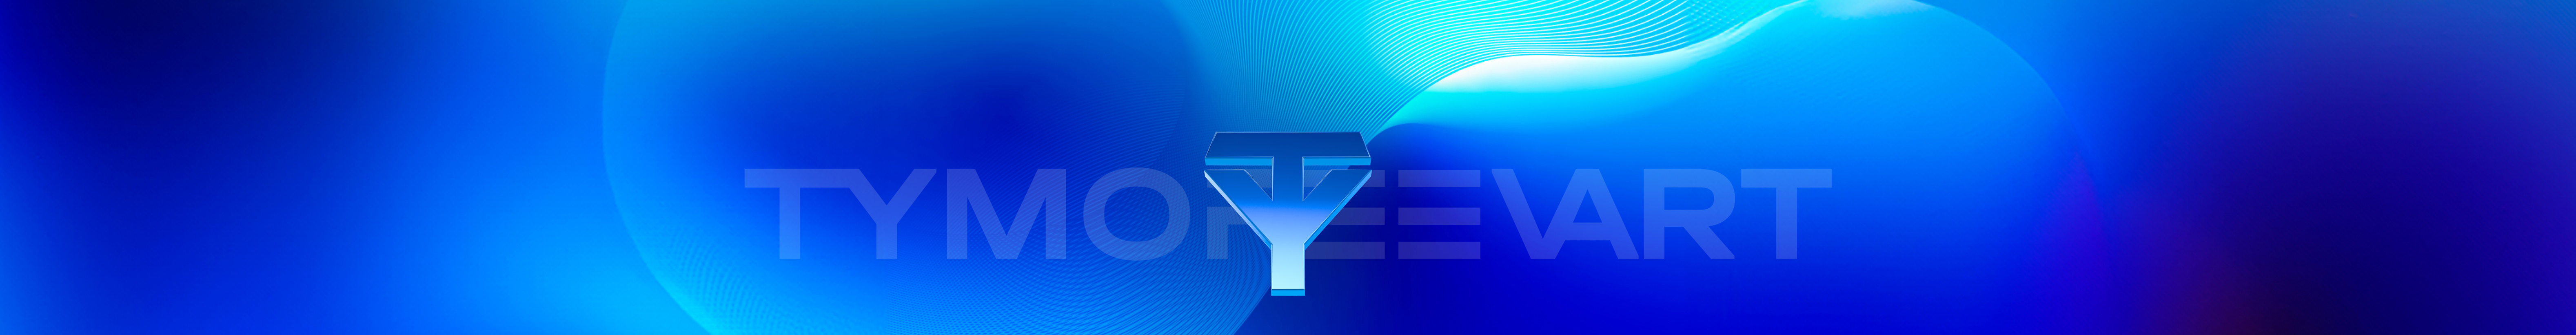 Profil-Banner von Nikita Tymofeev